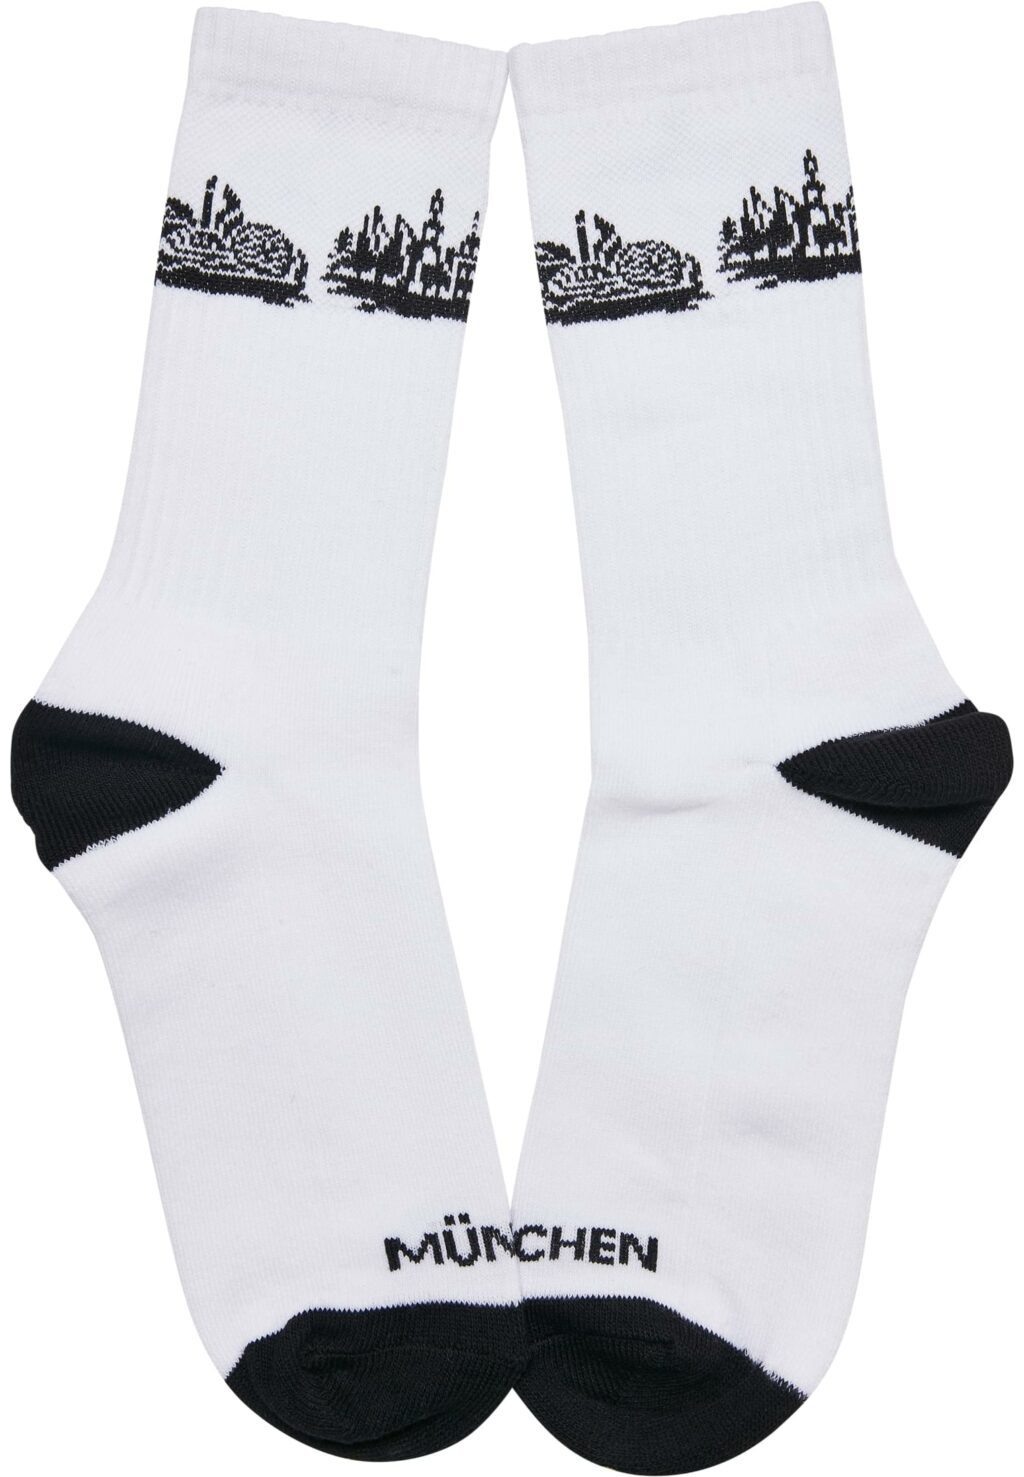 Major City 089 Socks 2-Pack black/white MT2314